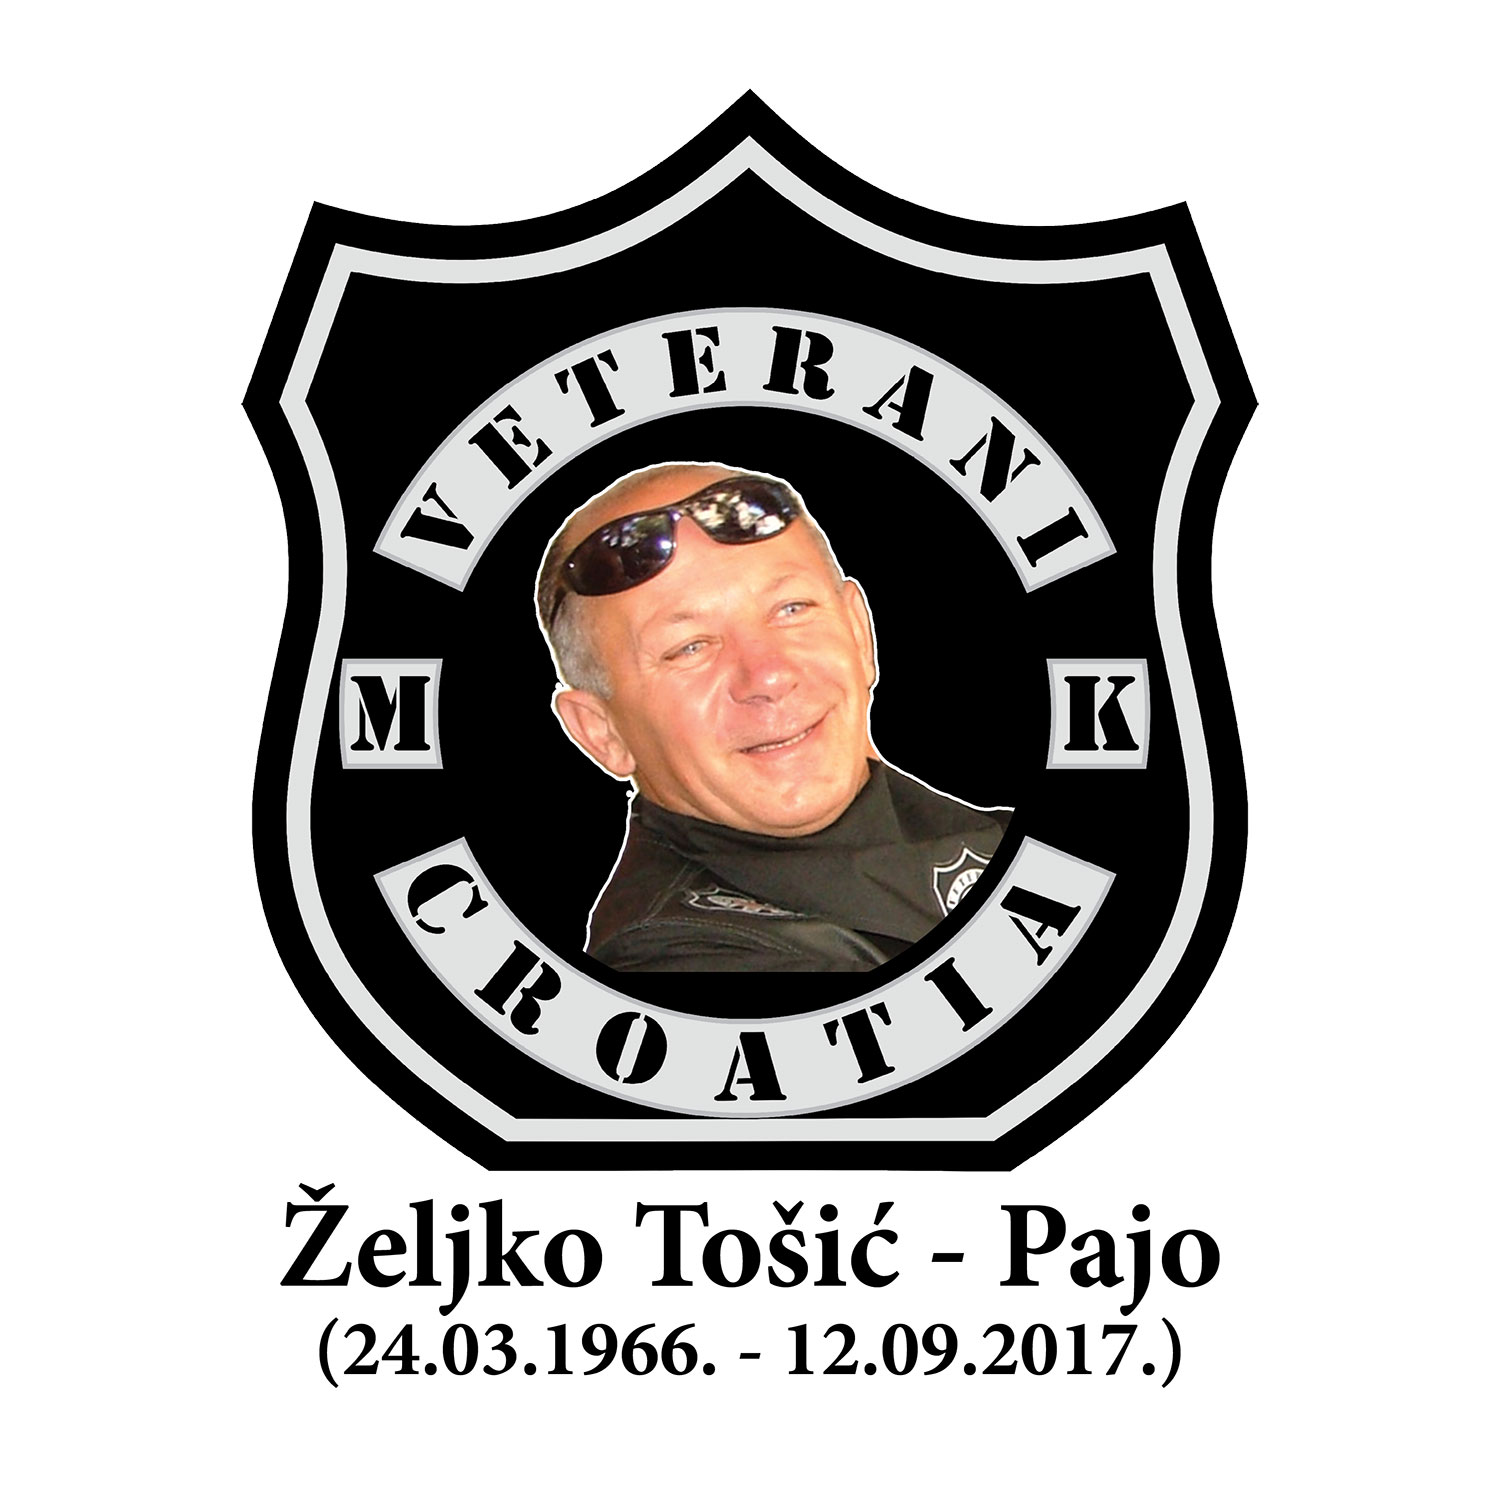 2017 09 12 tosic zeljko pajo 24031966 12092017